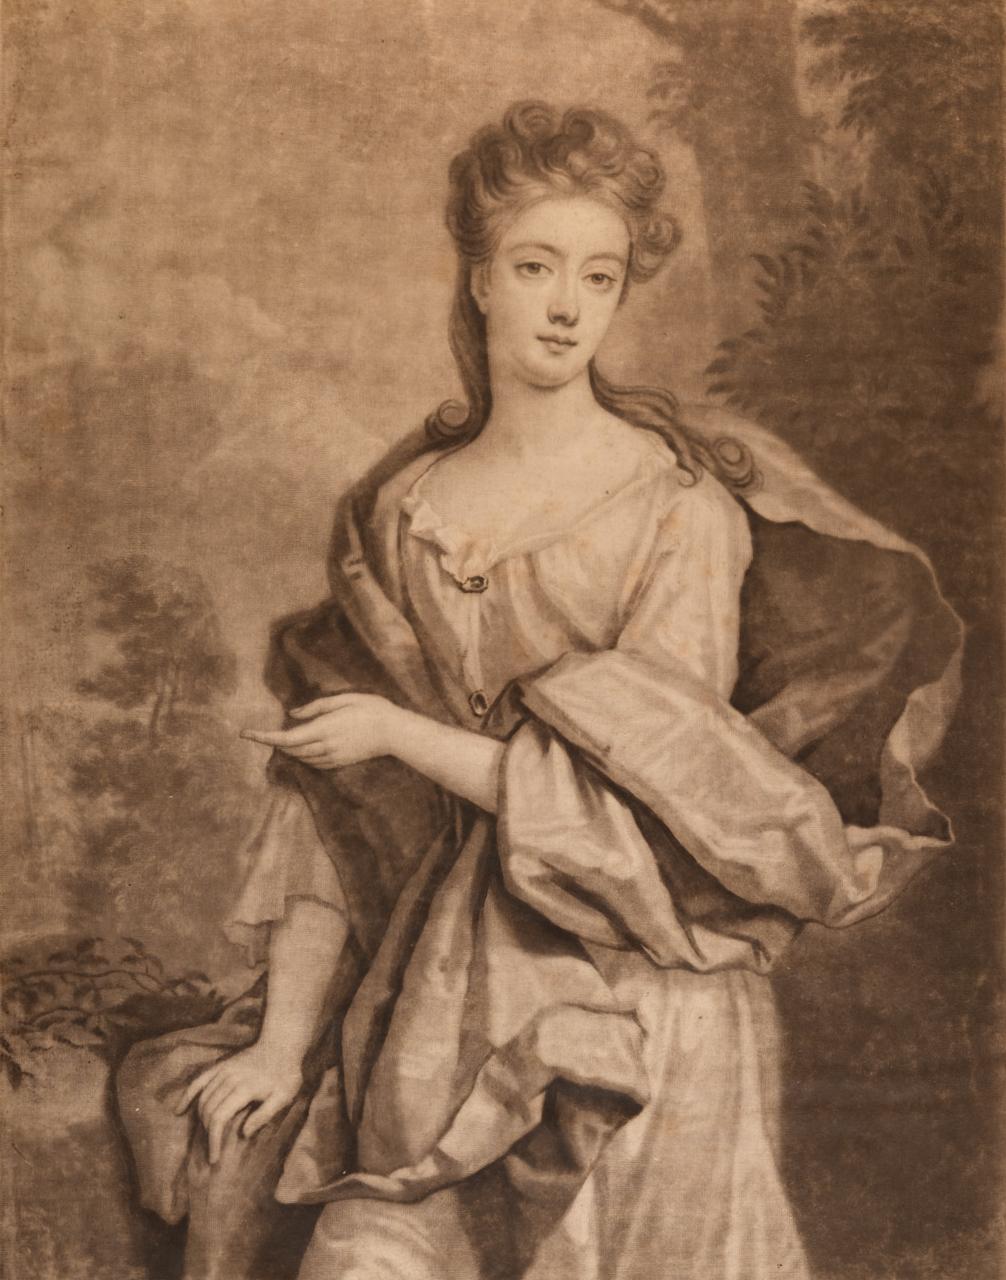  La Duchesse de St. Albans : Un portrait du XVIIe siècle d'après une peinture de Kneller